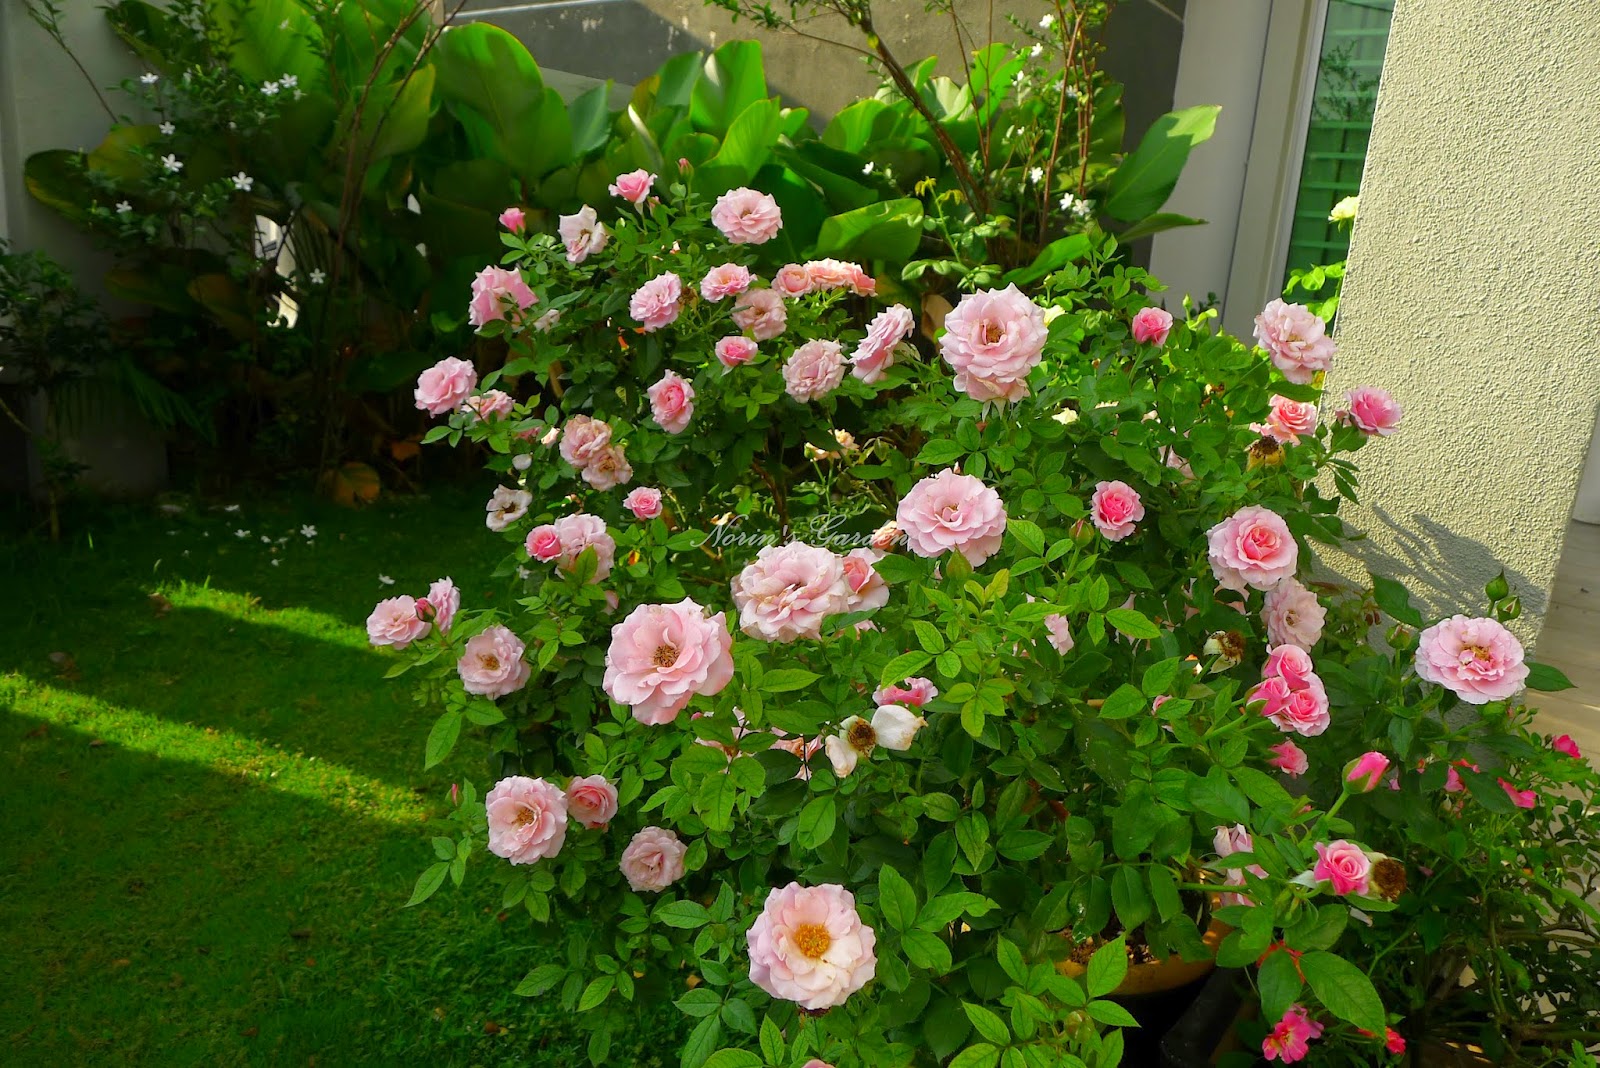 💐 Turabah 100 biji bunga ros campur, 100 bunga ros yang indah di dalam  pasu